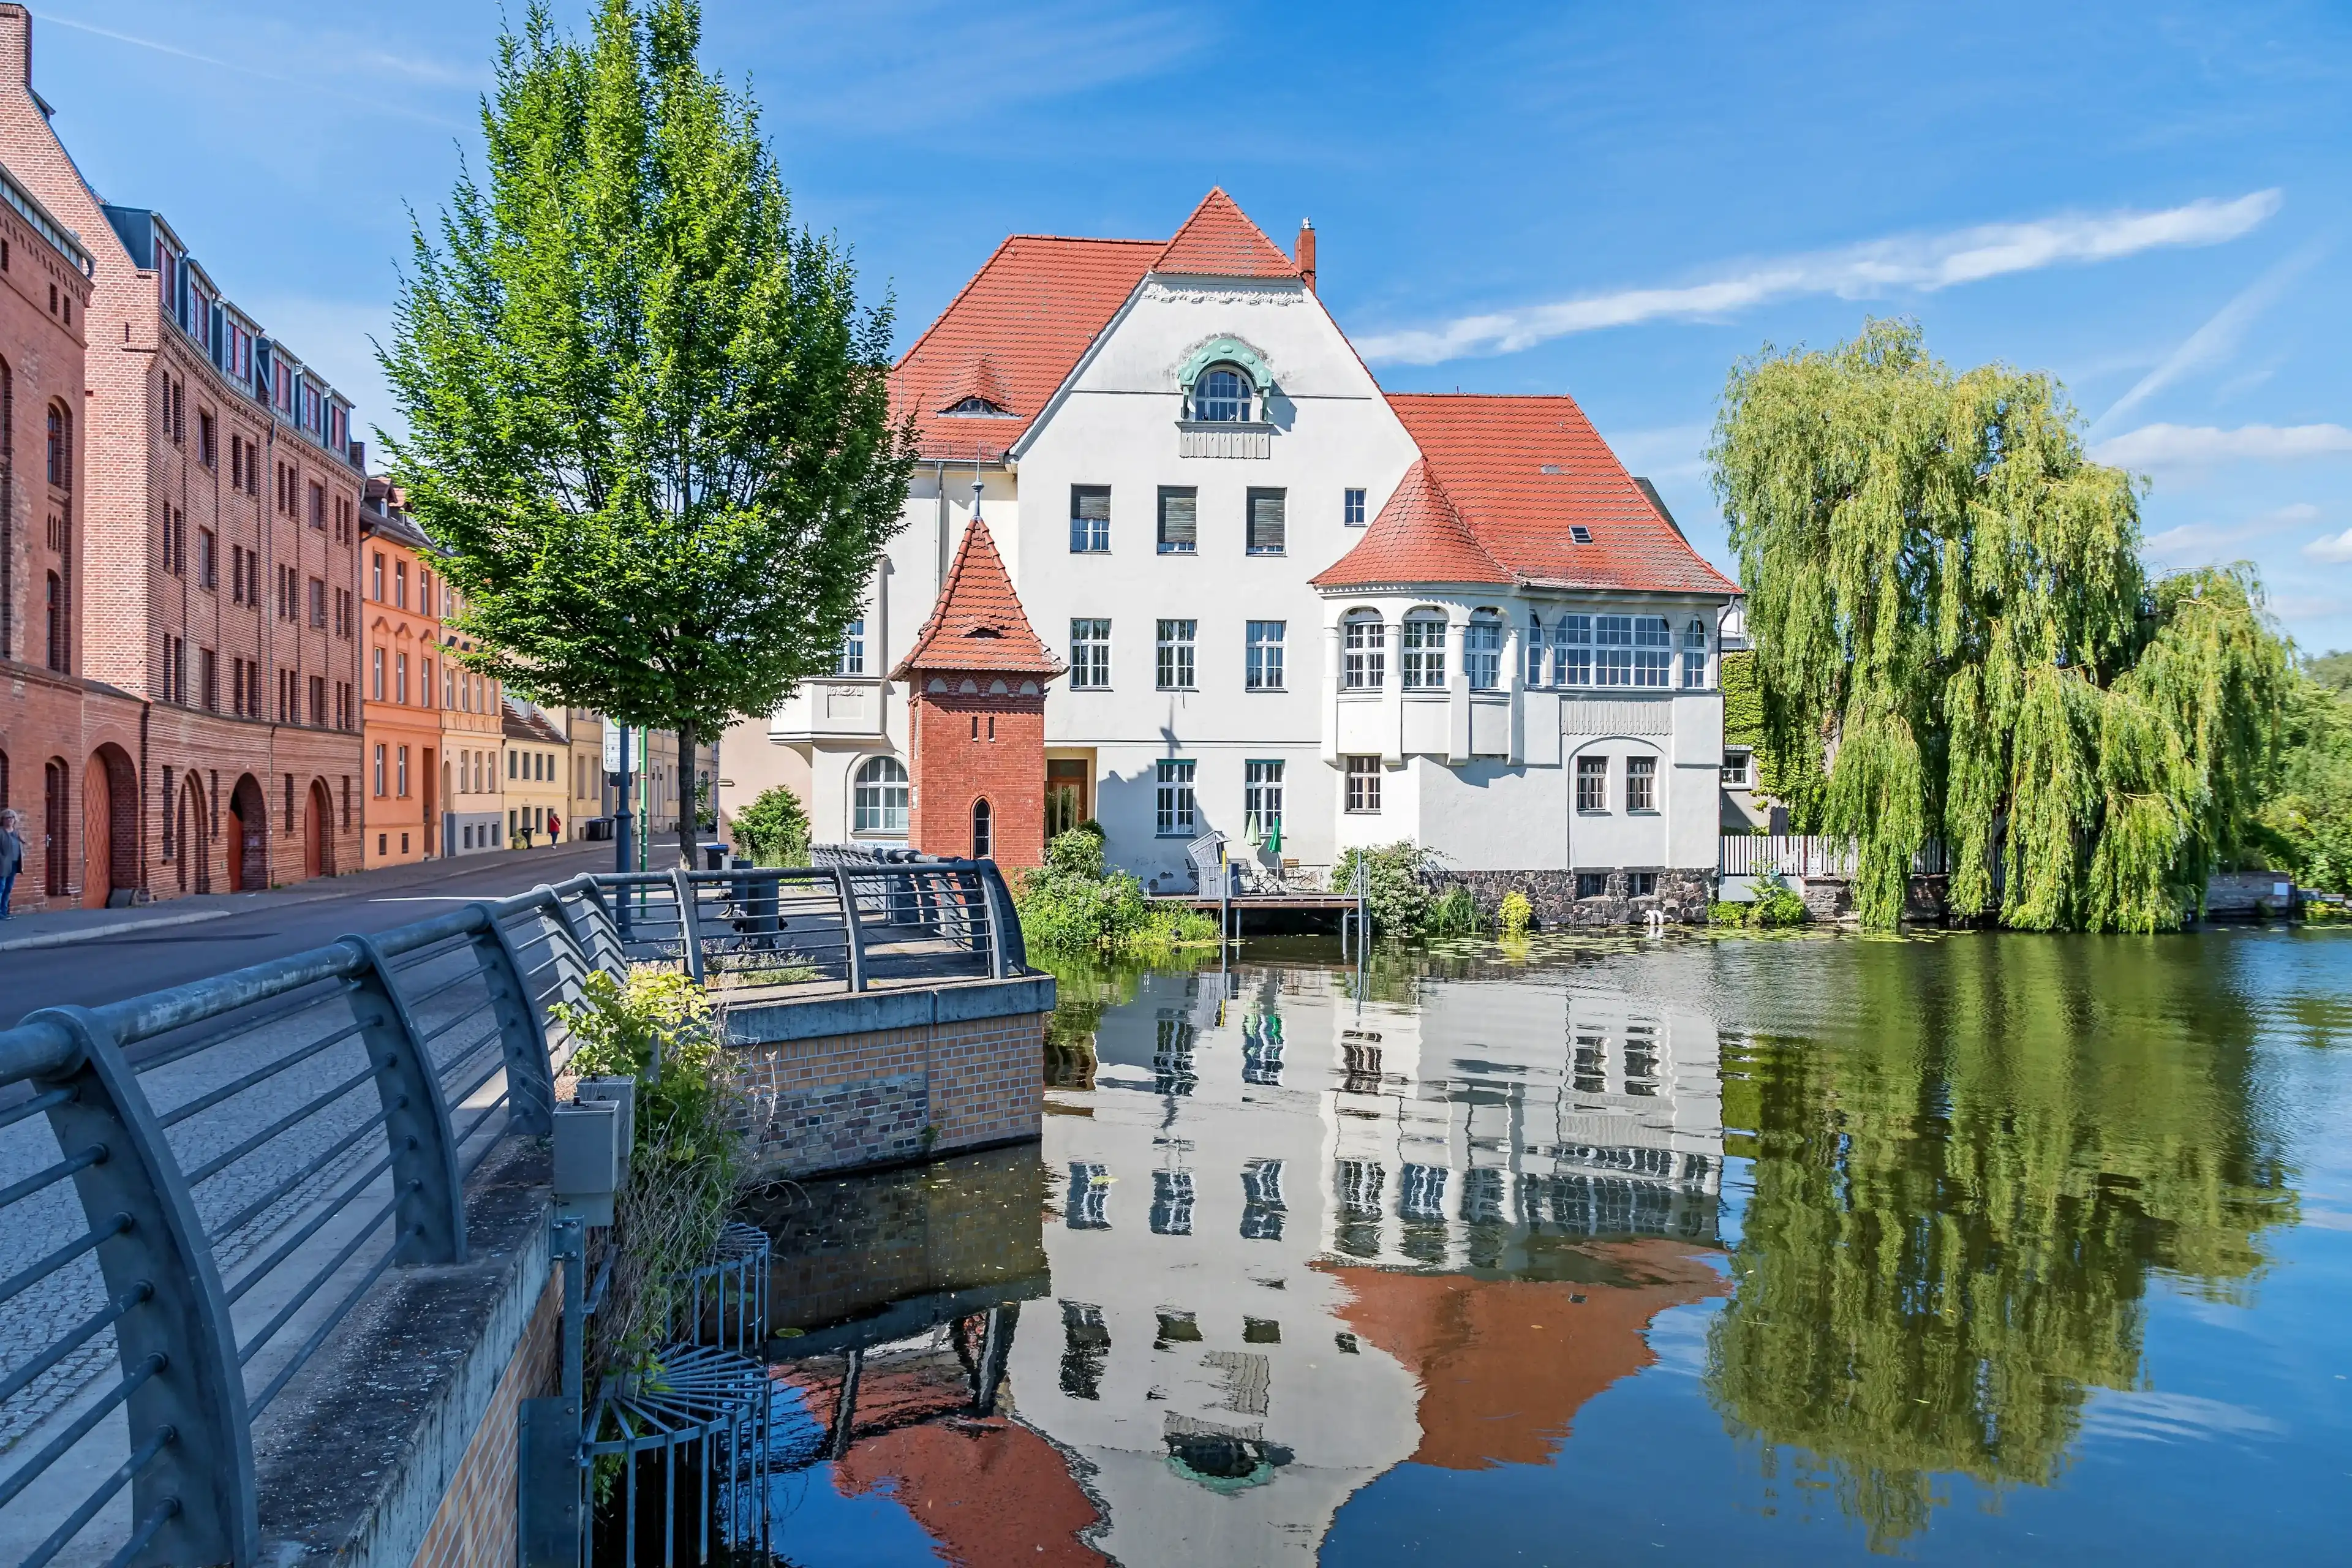 Best Brandenburg an der Havel hotels. Cheap hotels in Brandenburg an der Havel, Germany